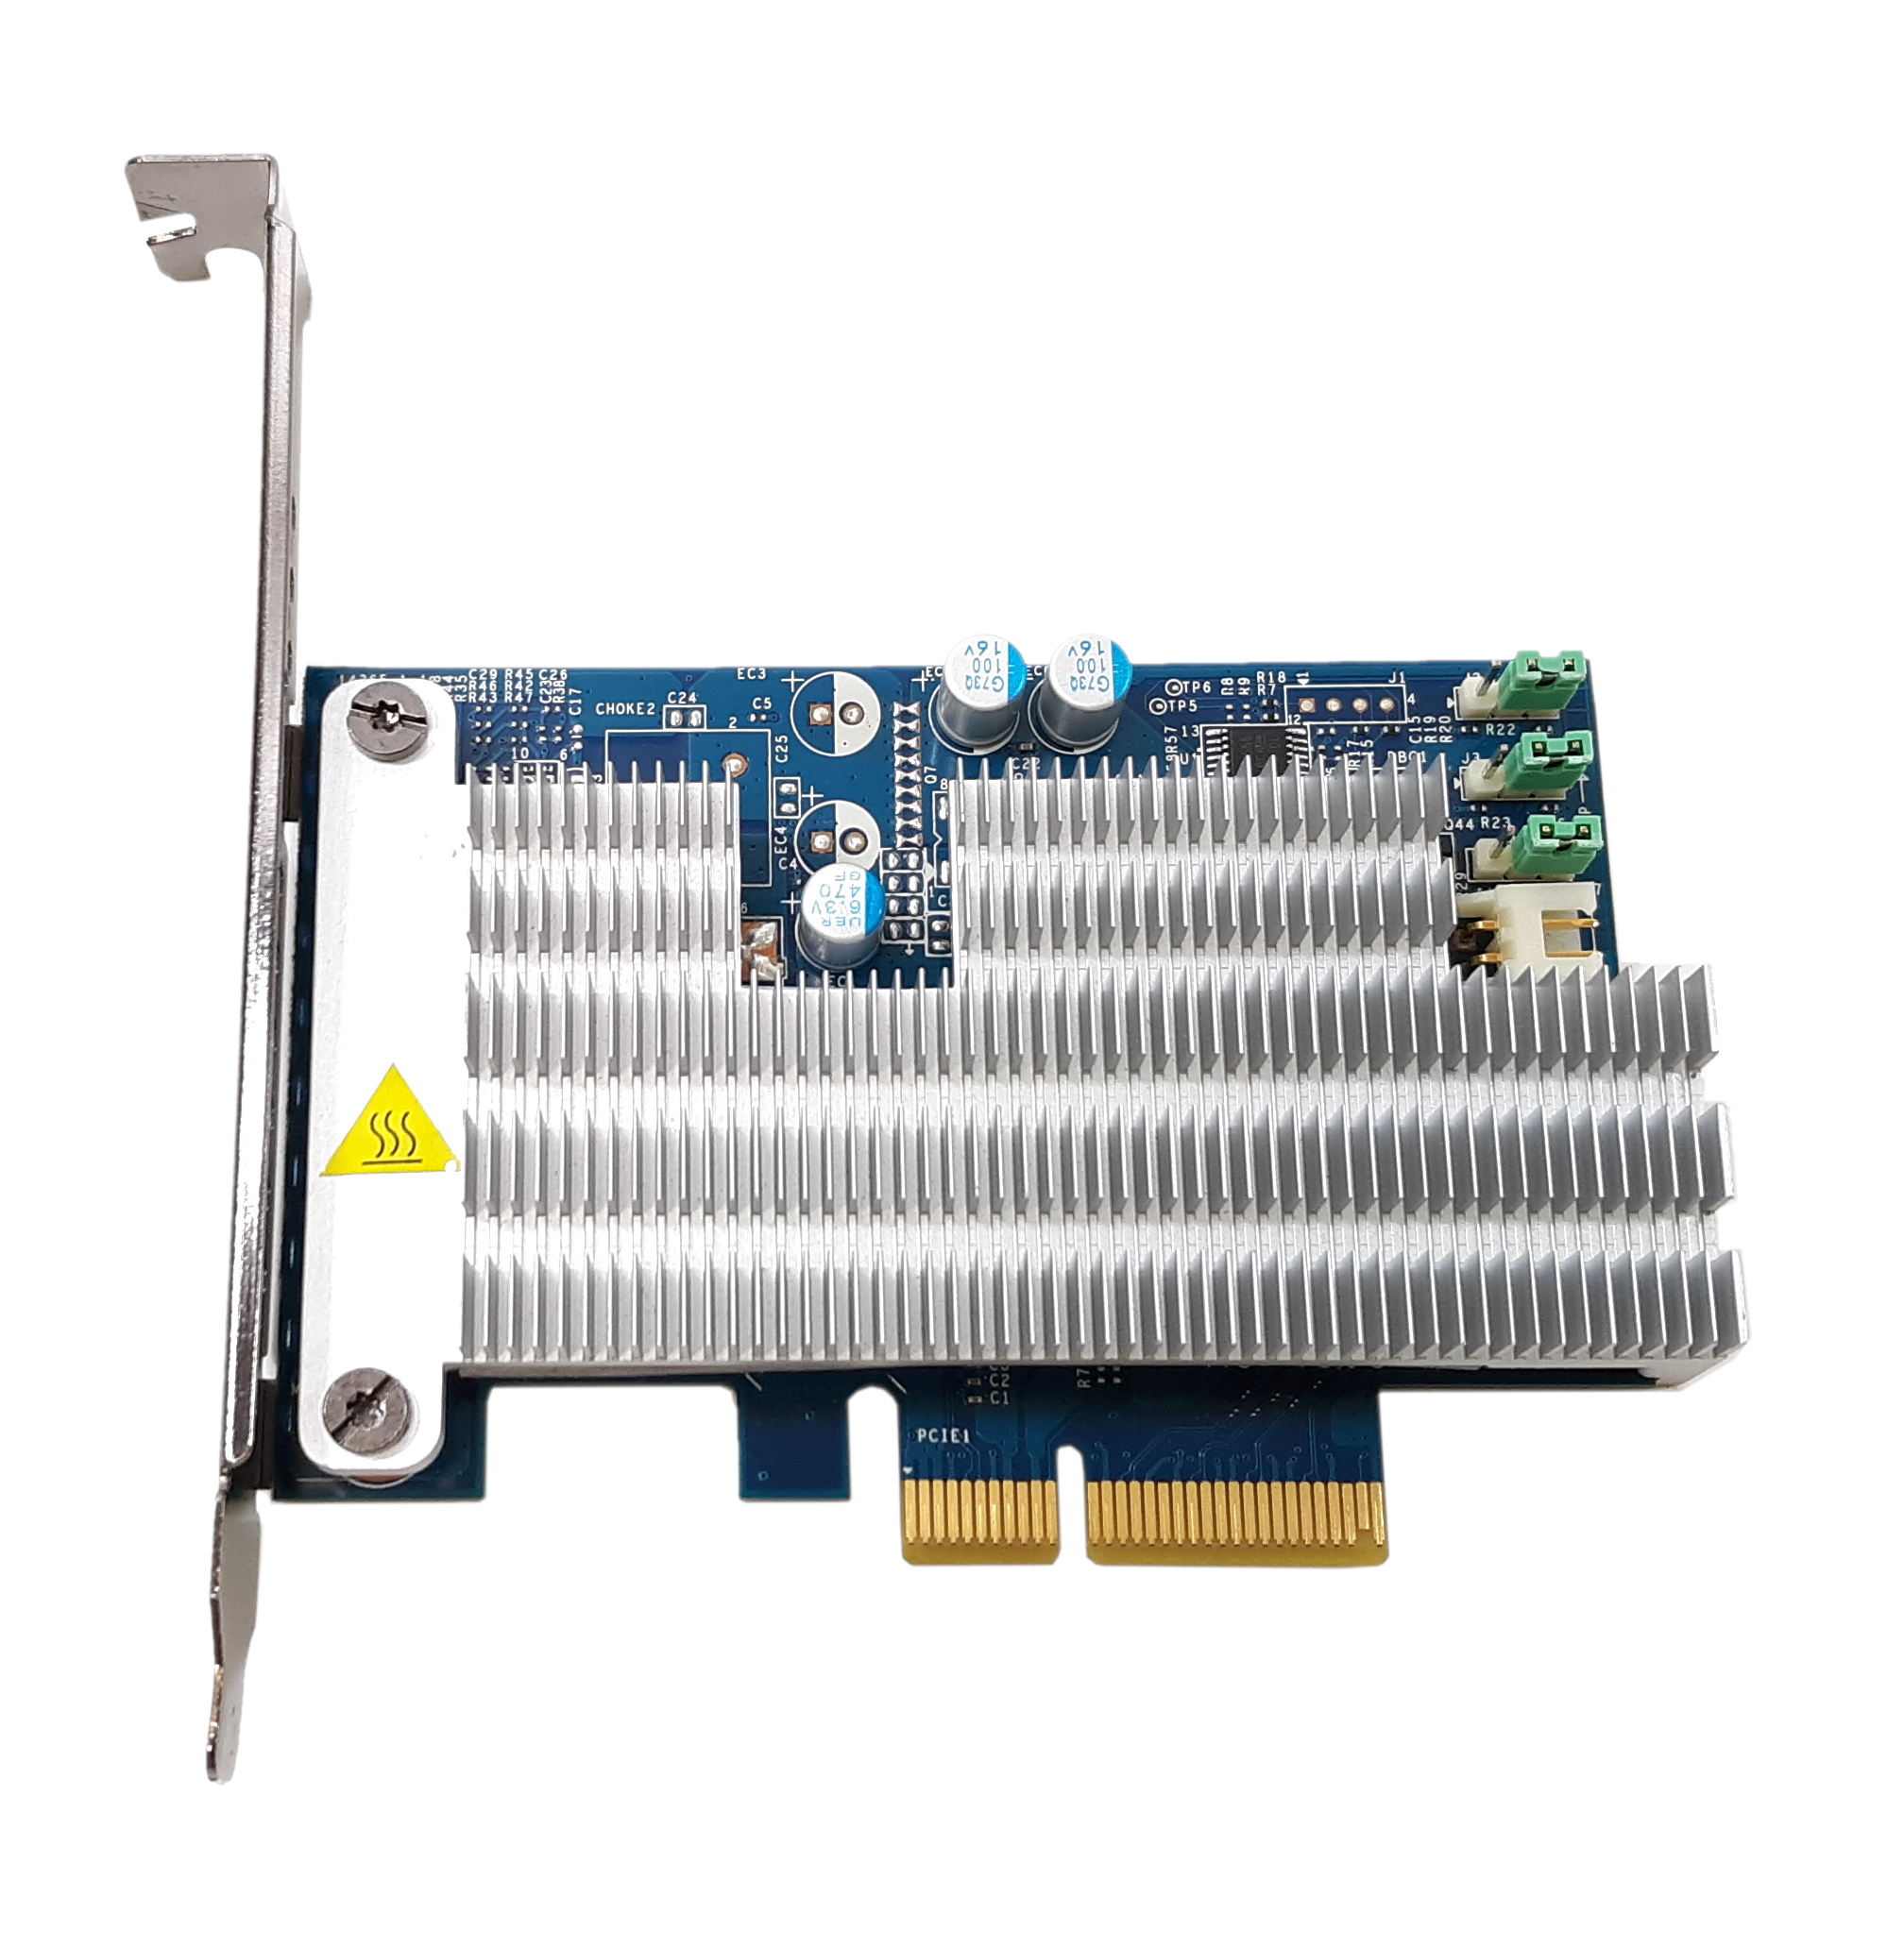 HP Z Turbo Drive G2 PCI-E Card 742006-003 no SSD M.2 z series